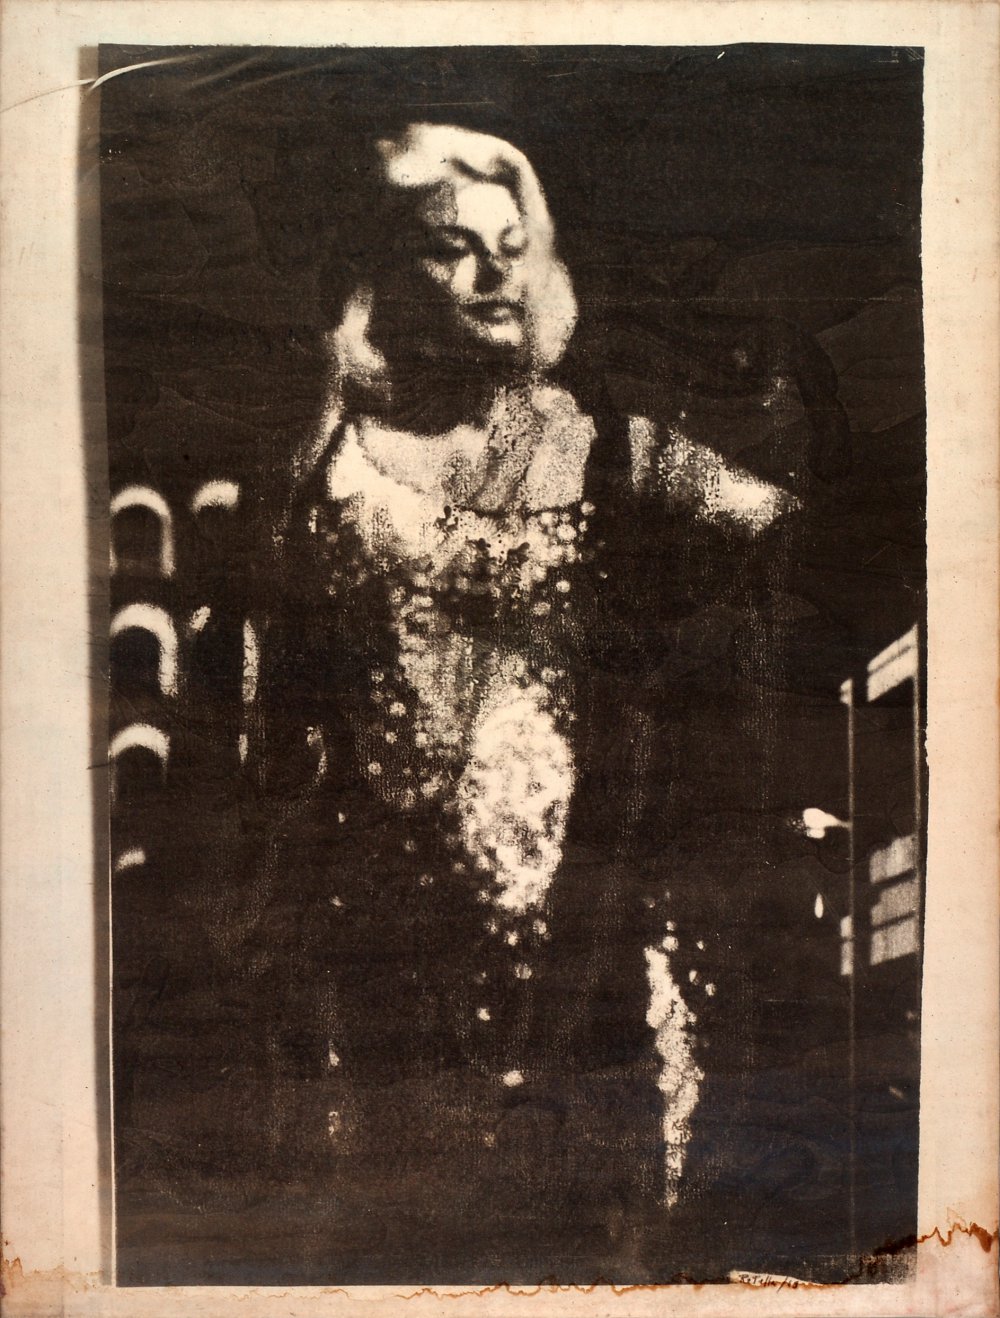 Mimmo Rotella, La diva, 1963